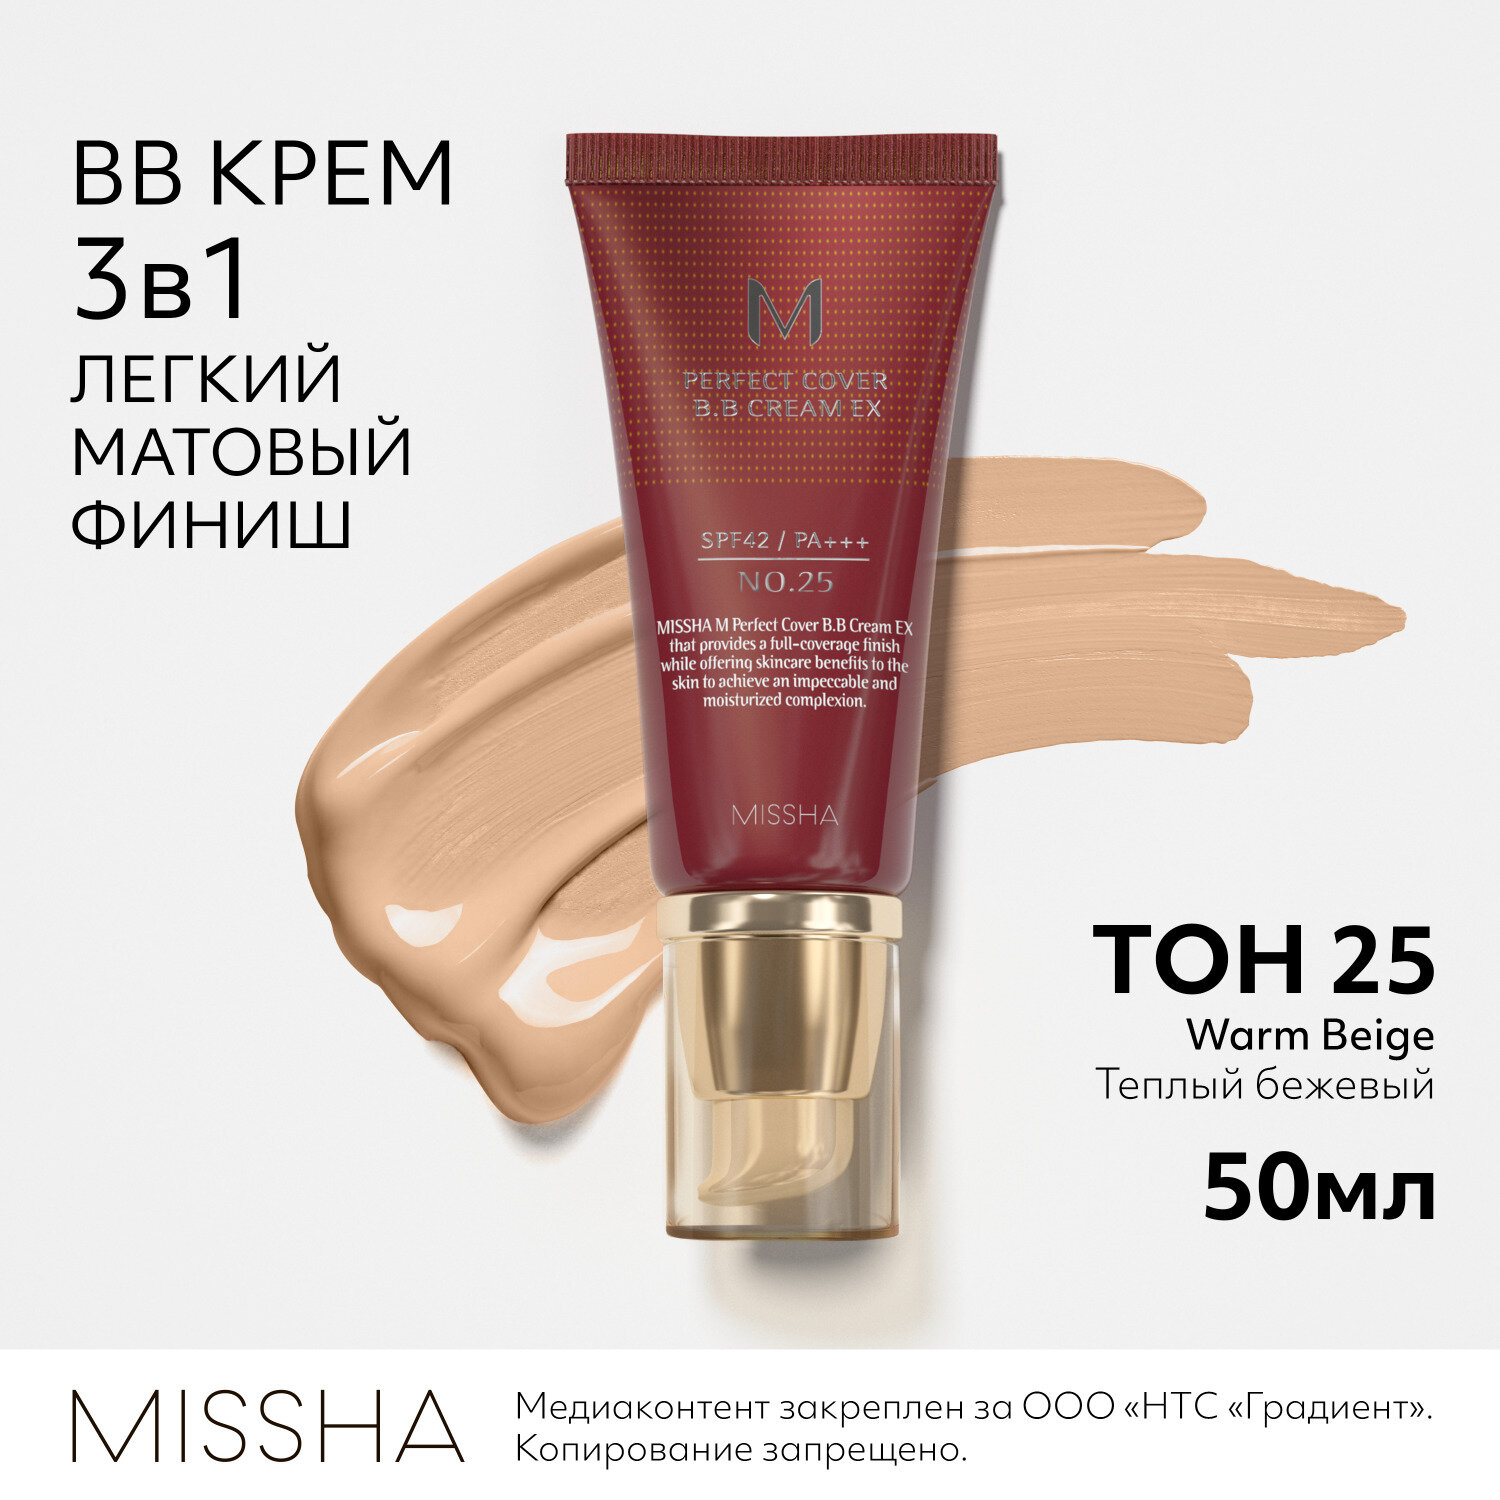 Missha BB крем M Perfect Cover, SPF 42 PA+++, 50 мл, оттенок: 25 warm beige